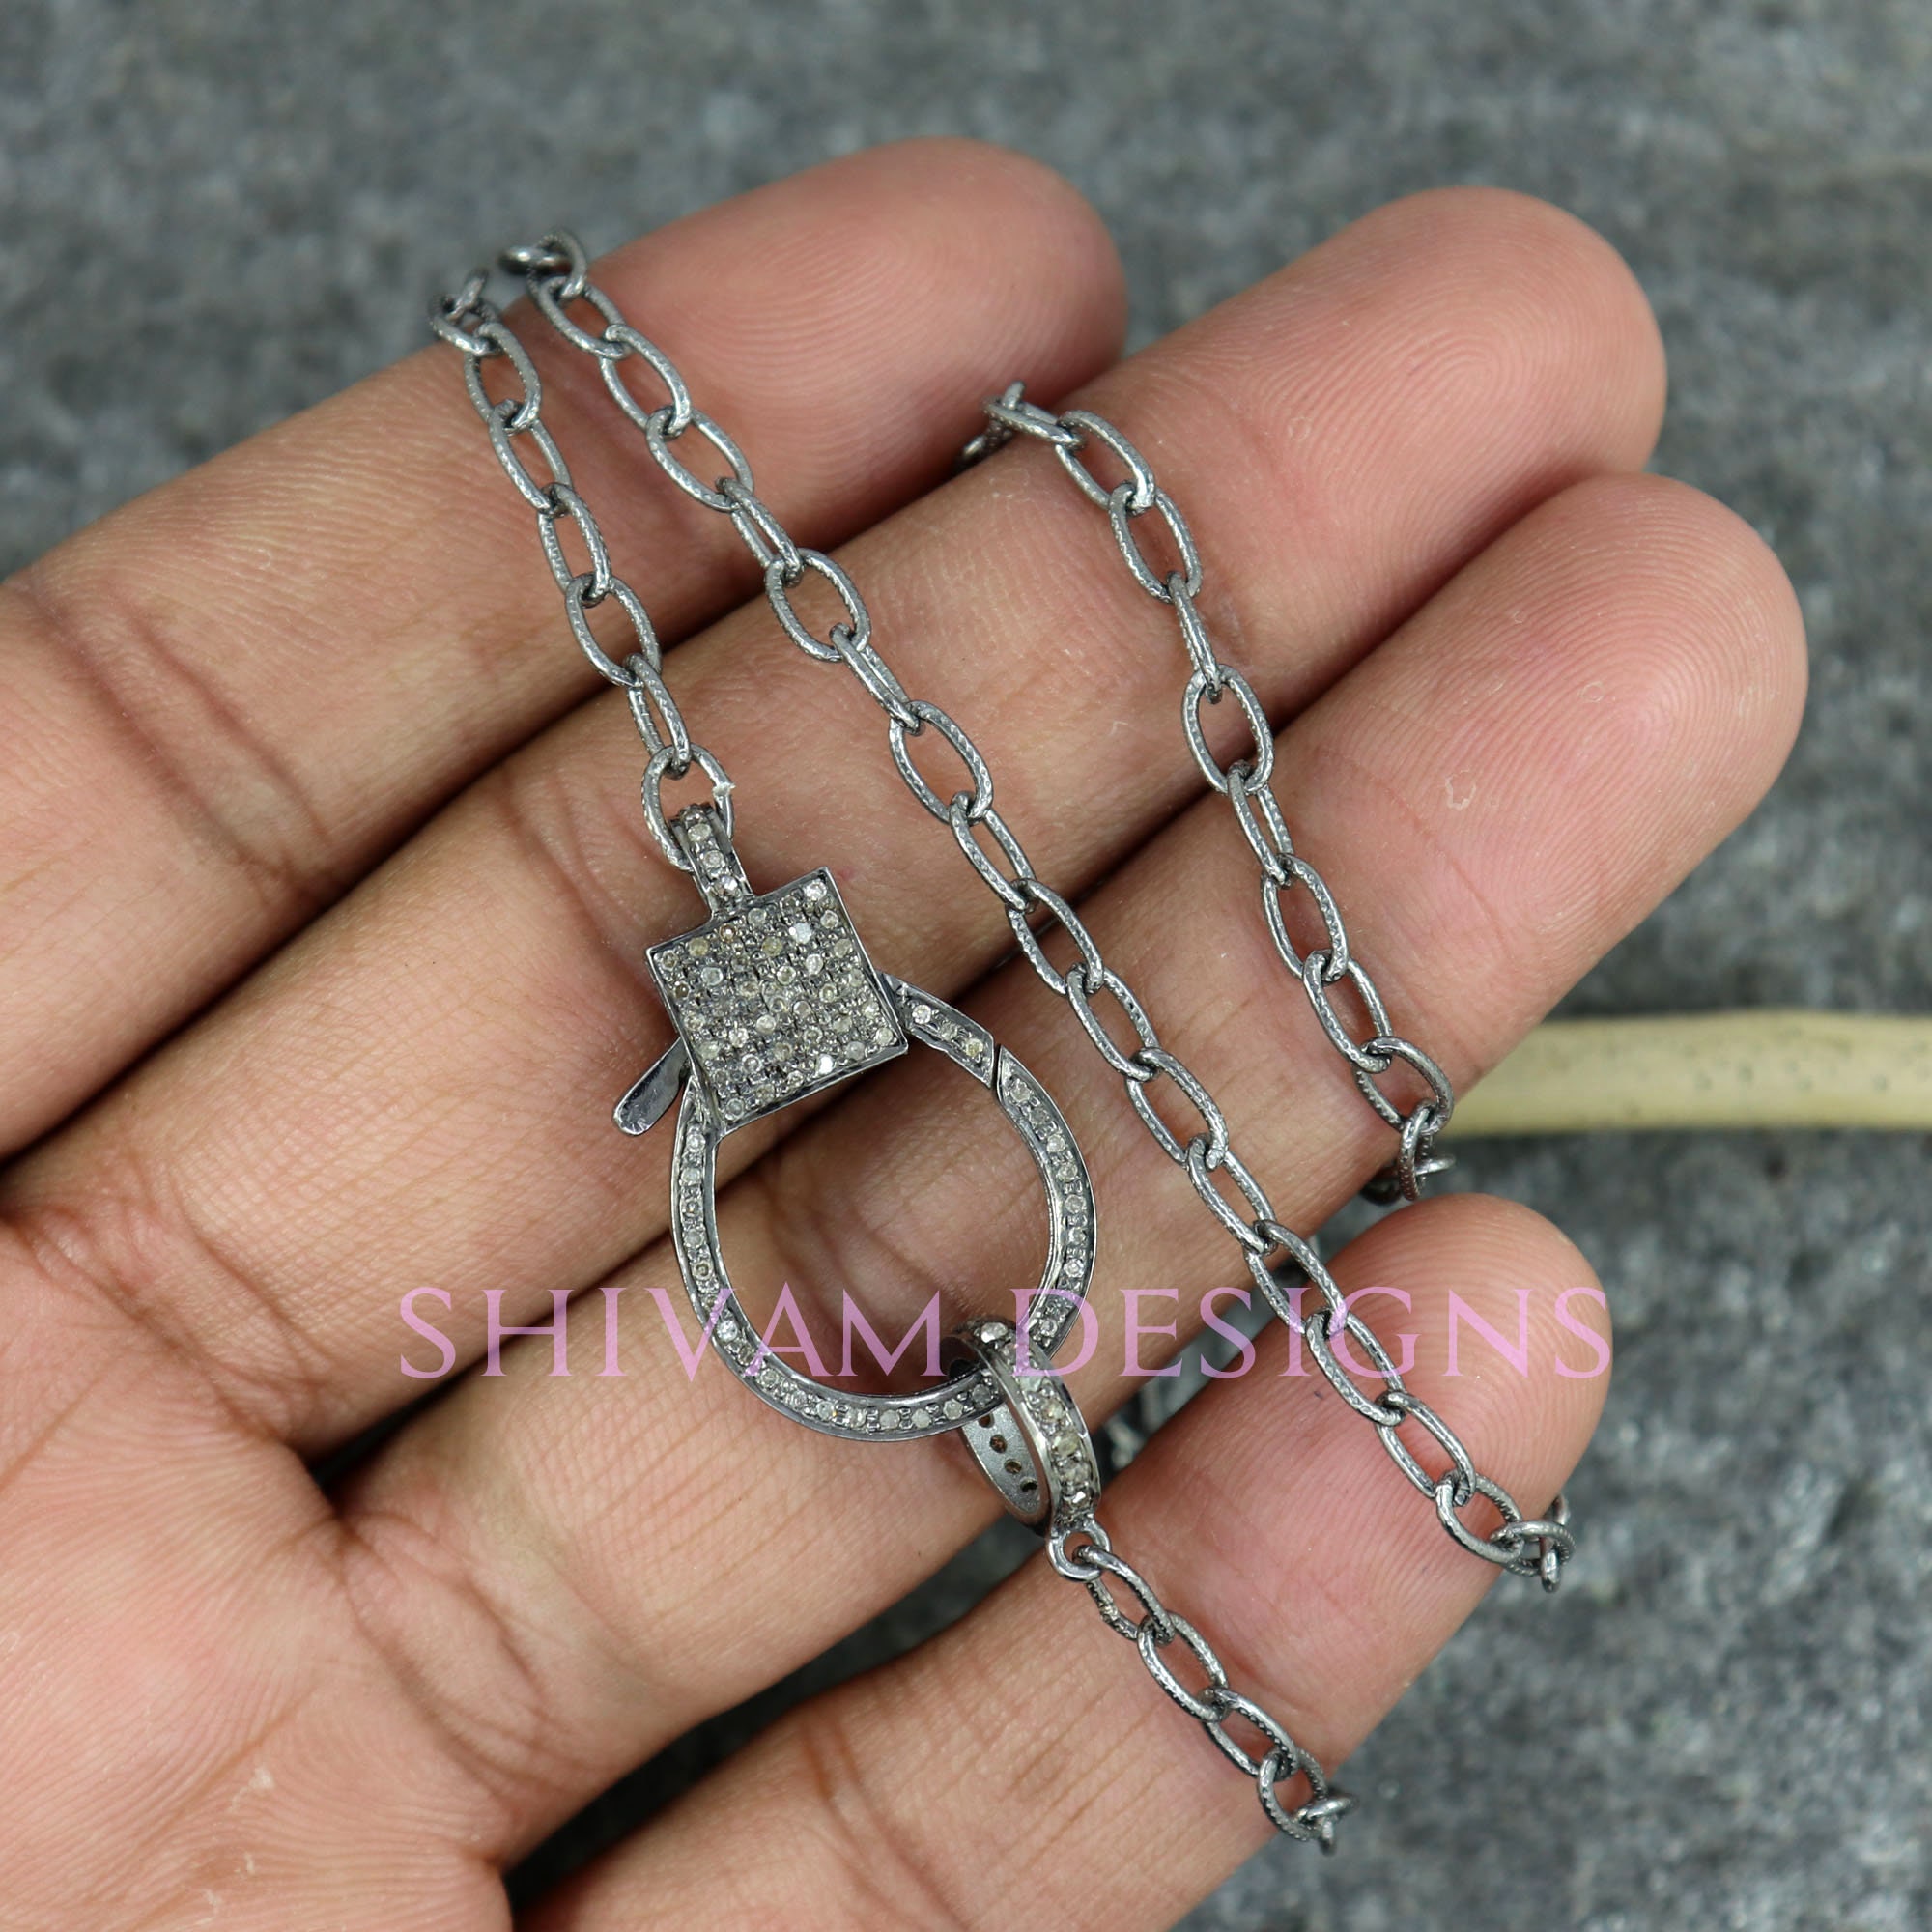 Uncommon James Women's Eternity Lock Pendant Necklace